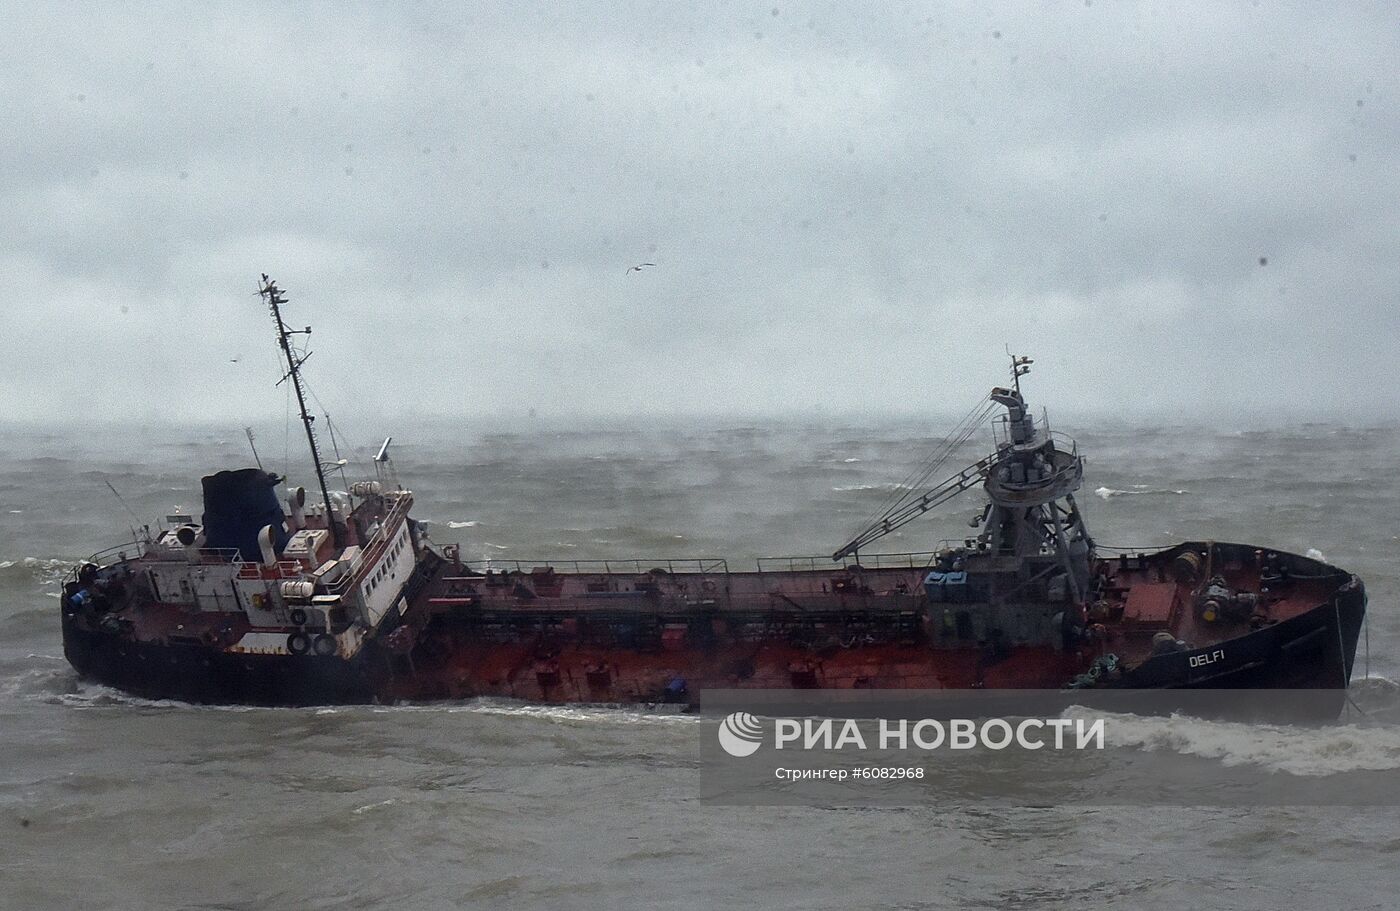 Танкер "Делфи" терпит бедствие в Одесском заливе